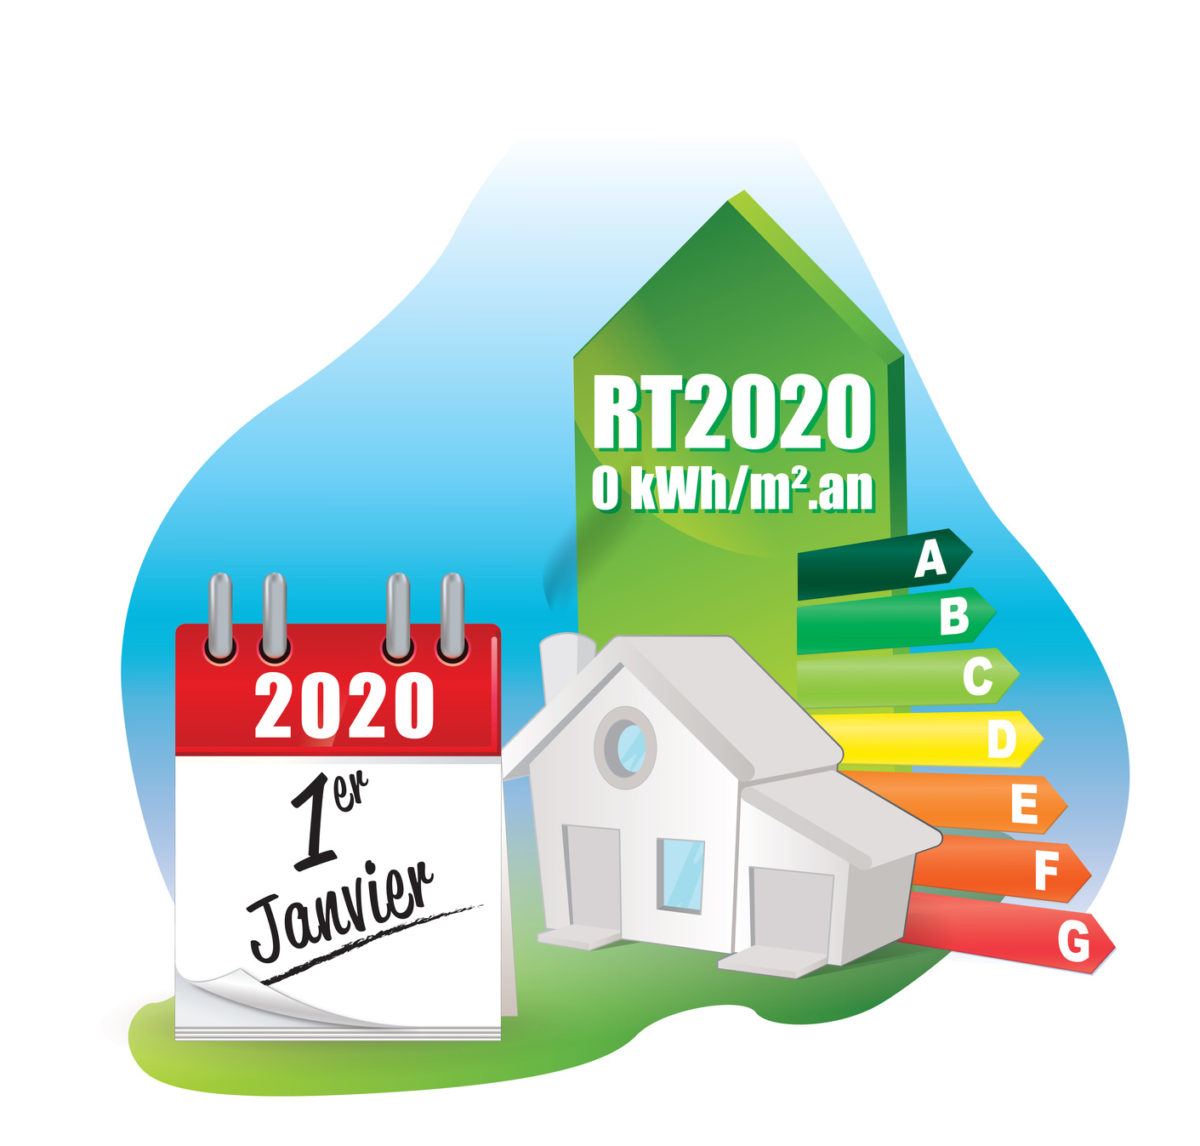 Régulation thermique 2012 versus régulation thermique 2020 : les différences